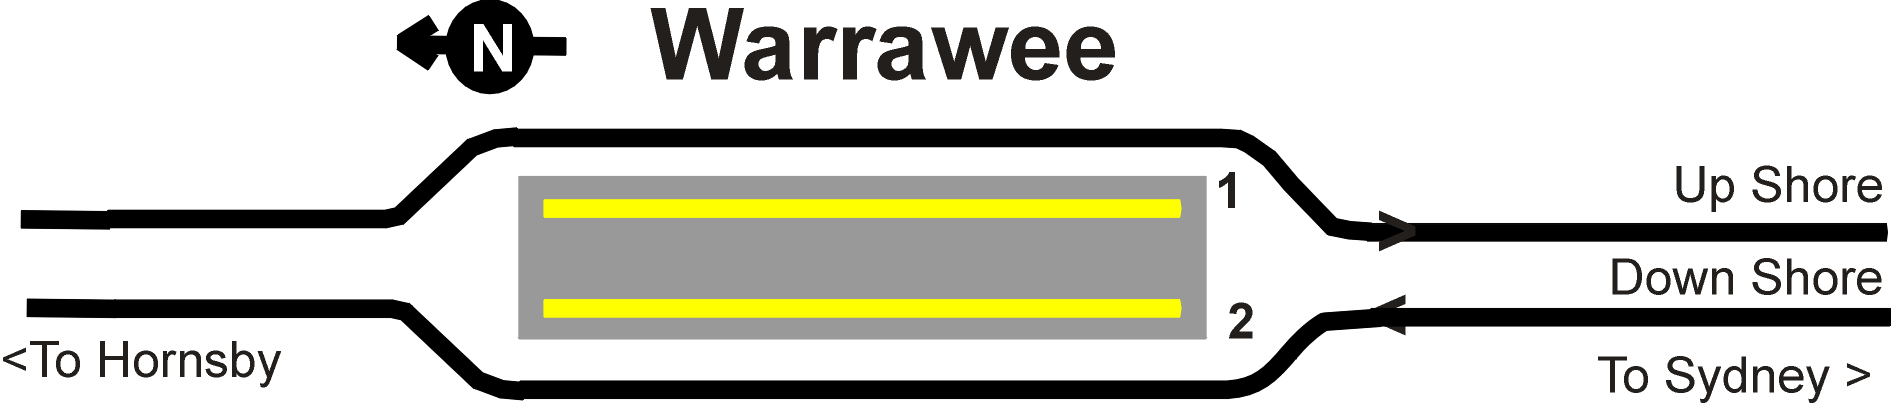 Warrawee Station